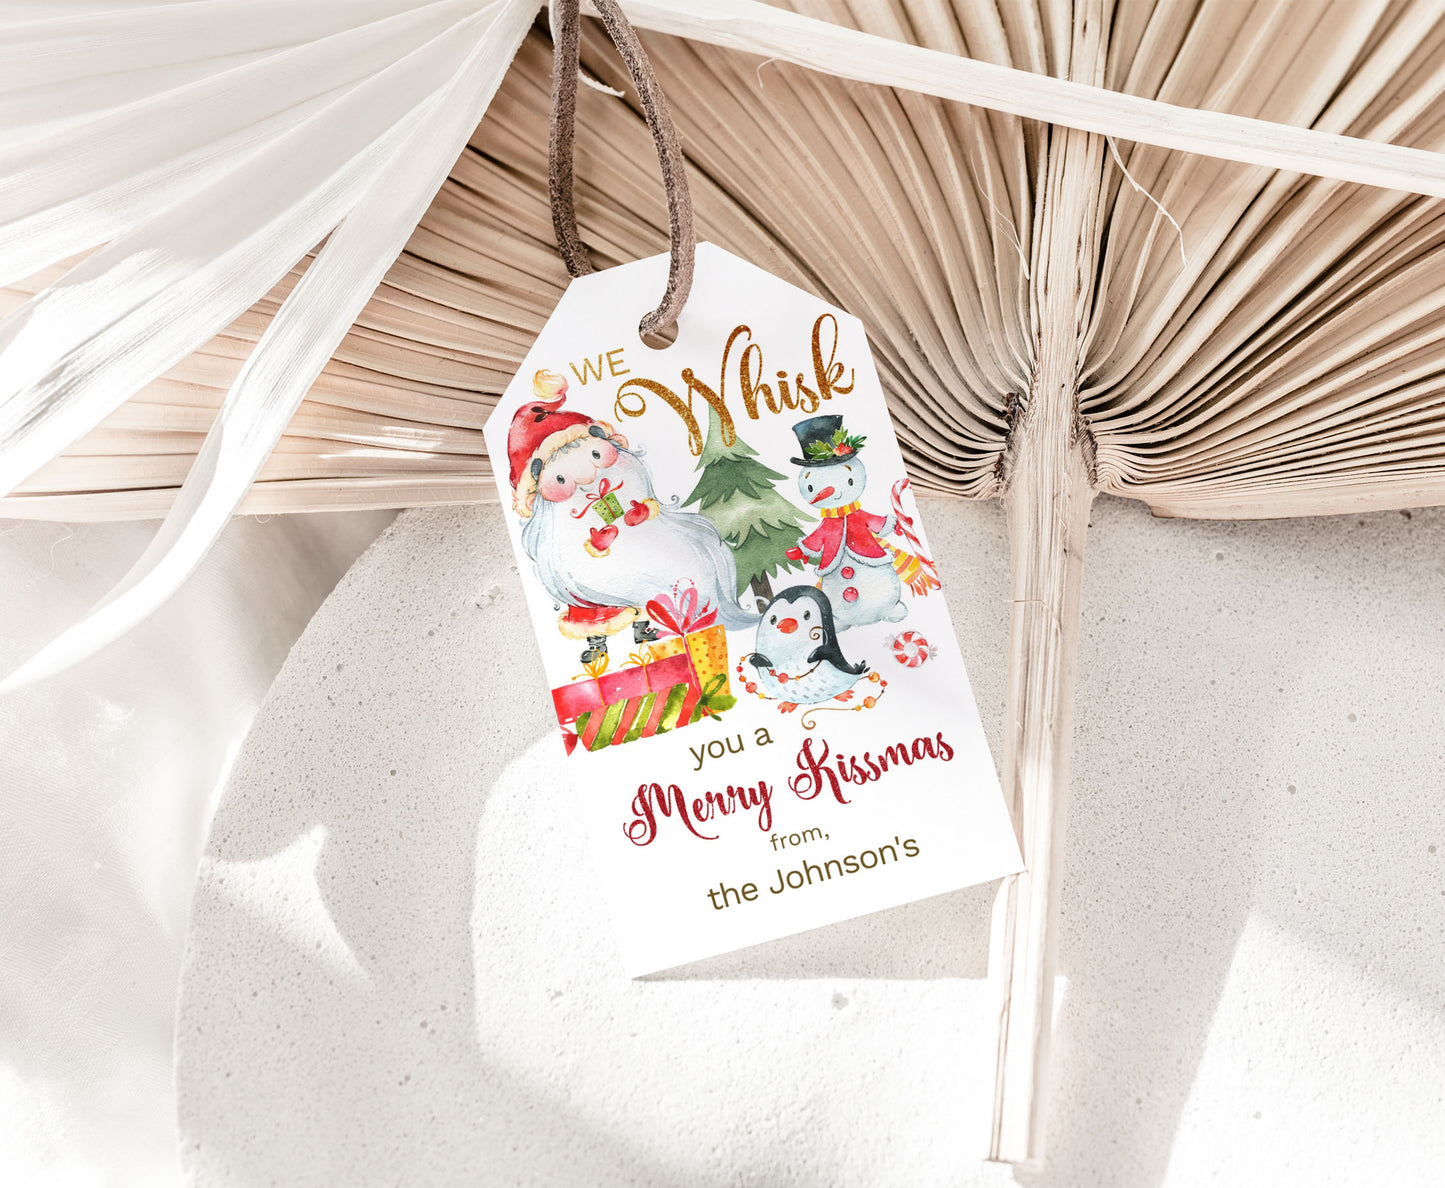 We wisk you a merry kissmas Tags | Editable Christmas Gift Tag - 112